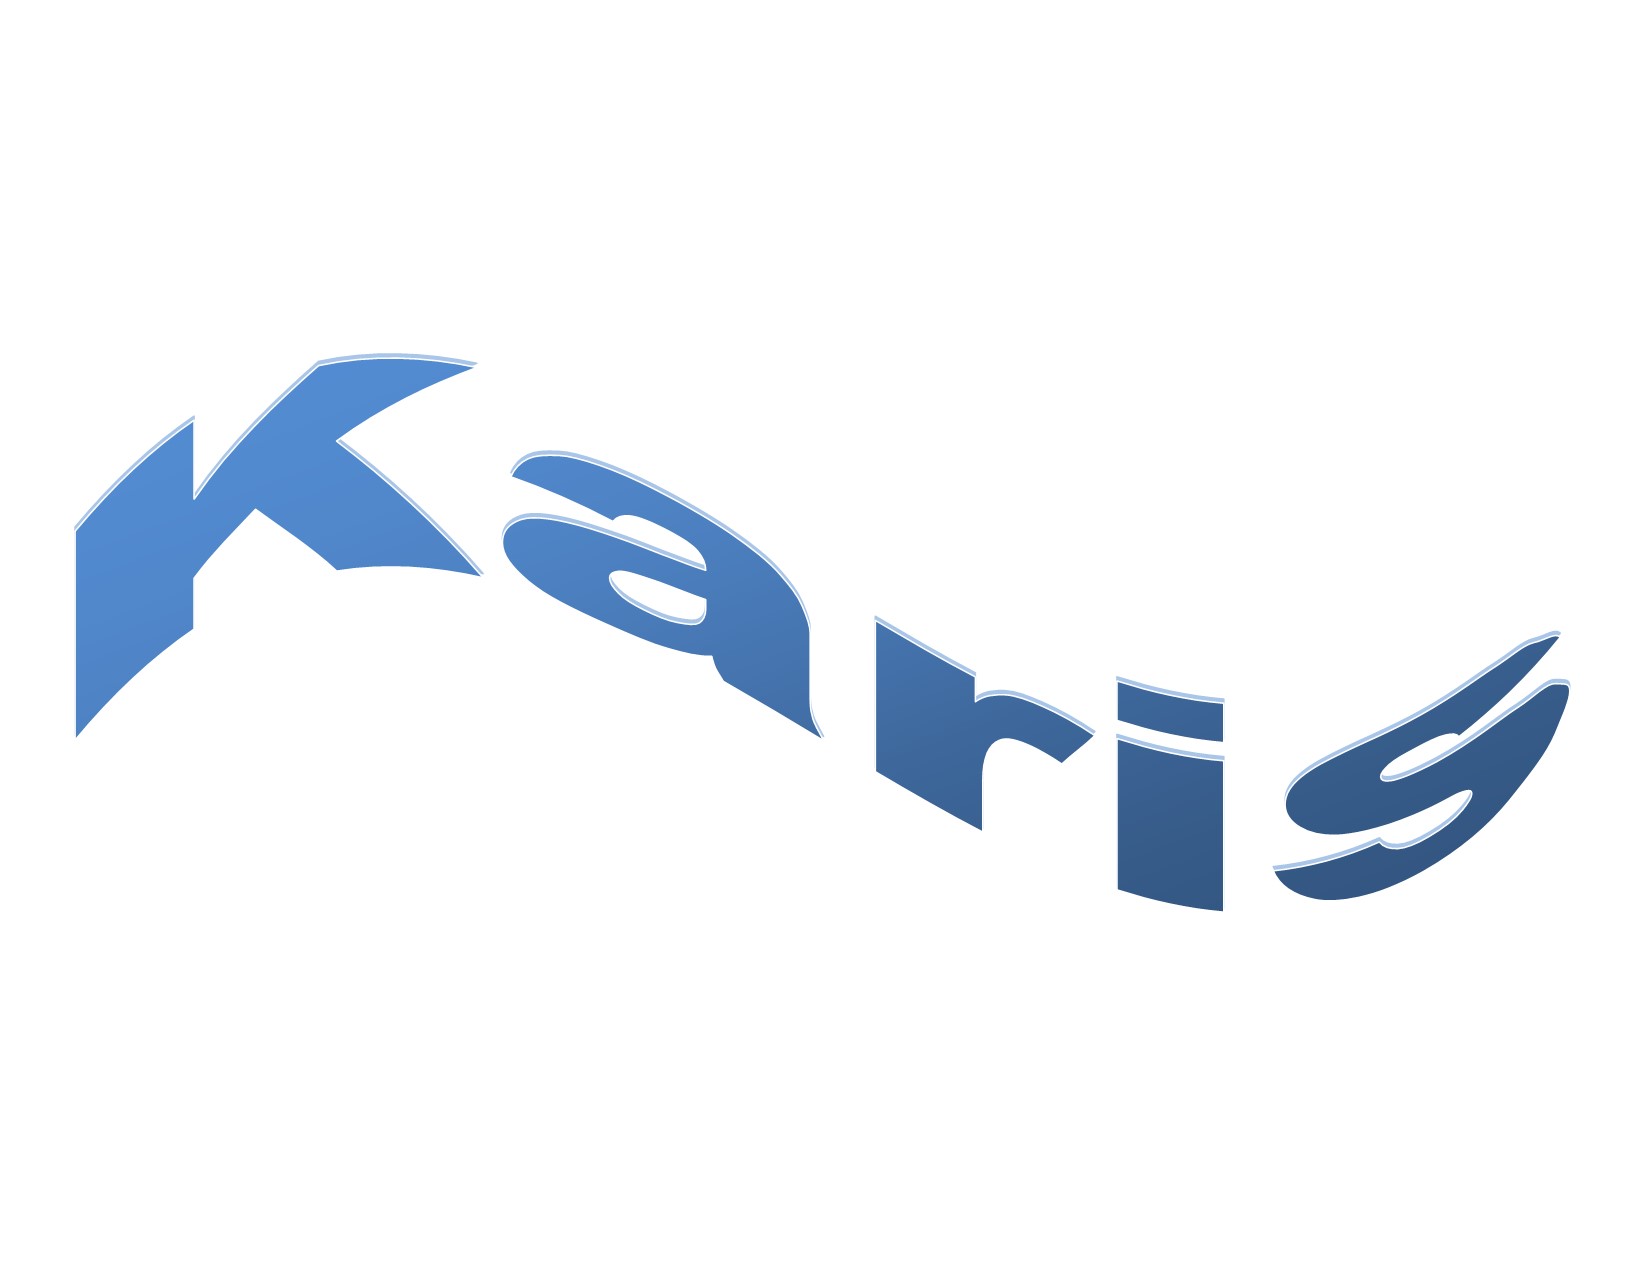 Karis’s songs